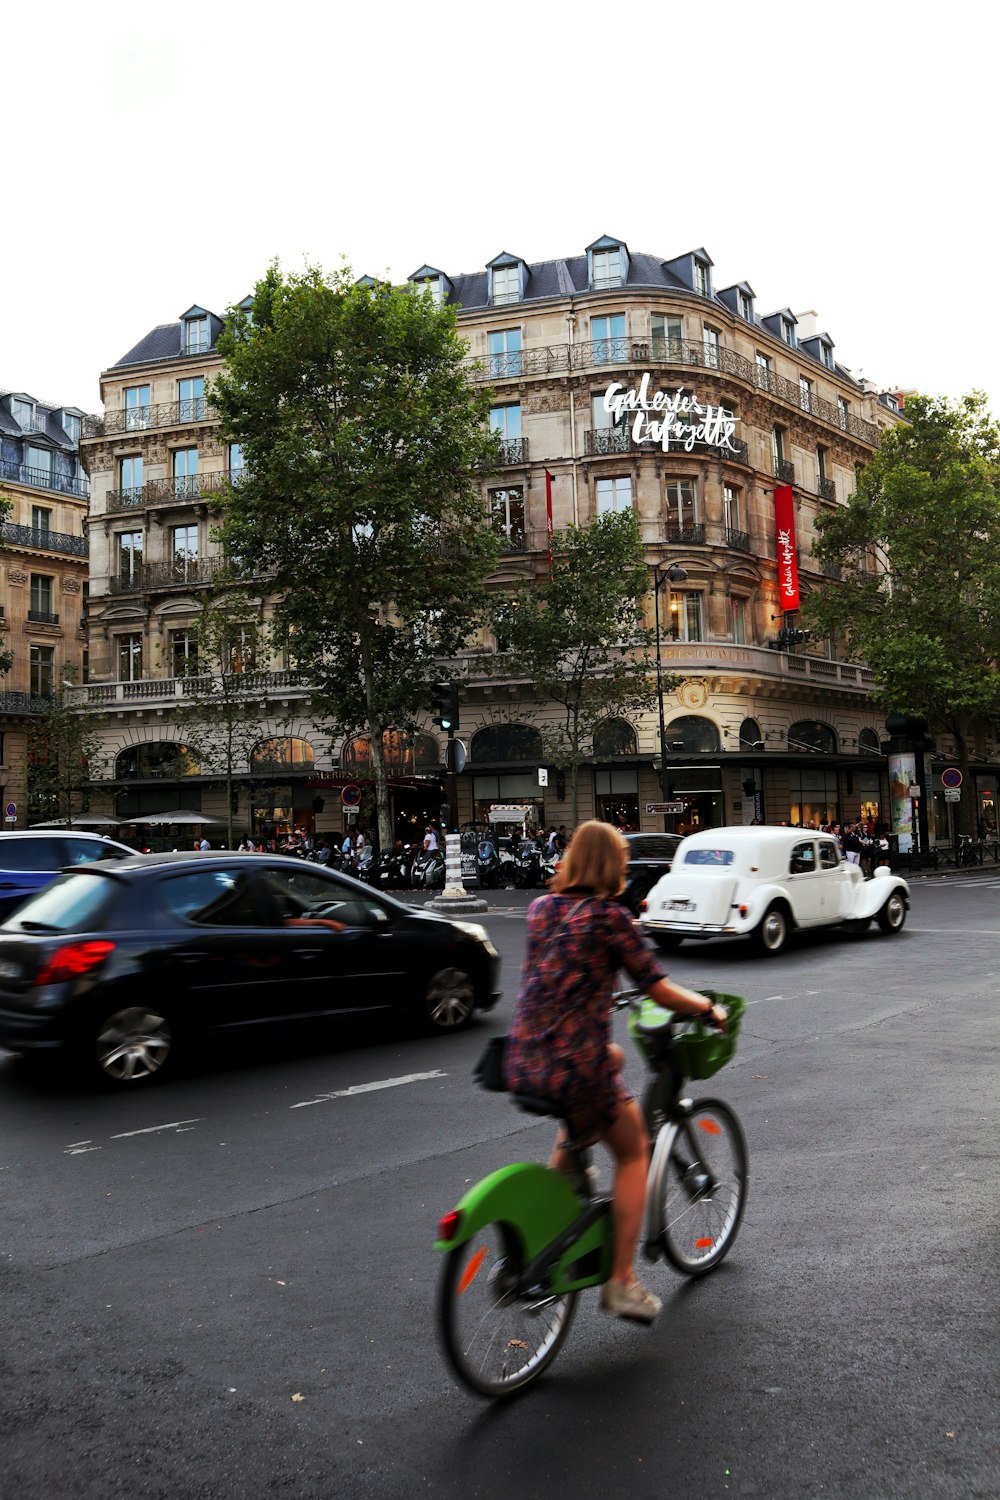 Una persona montando en bicicleta en una calle con coches y edificios al fondo